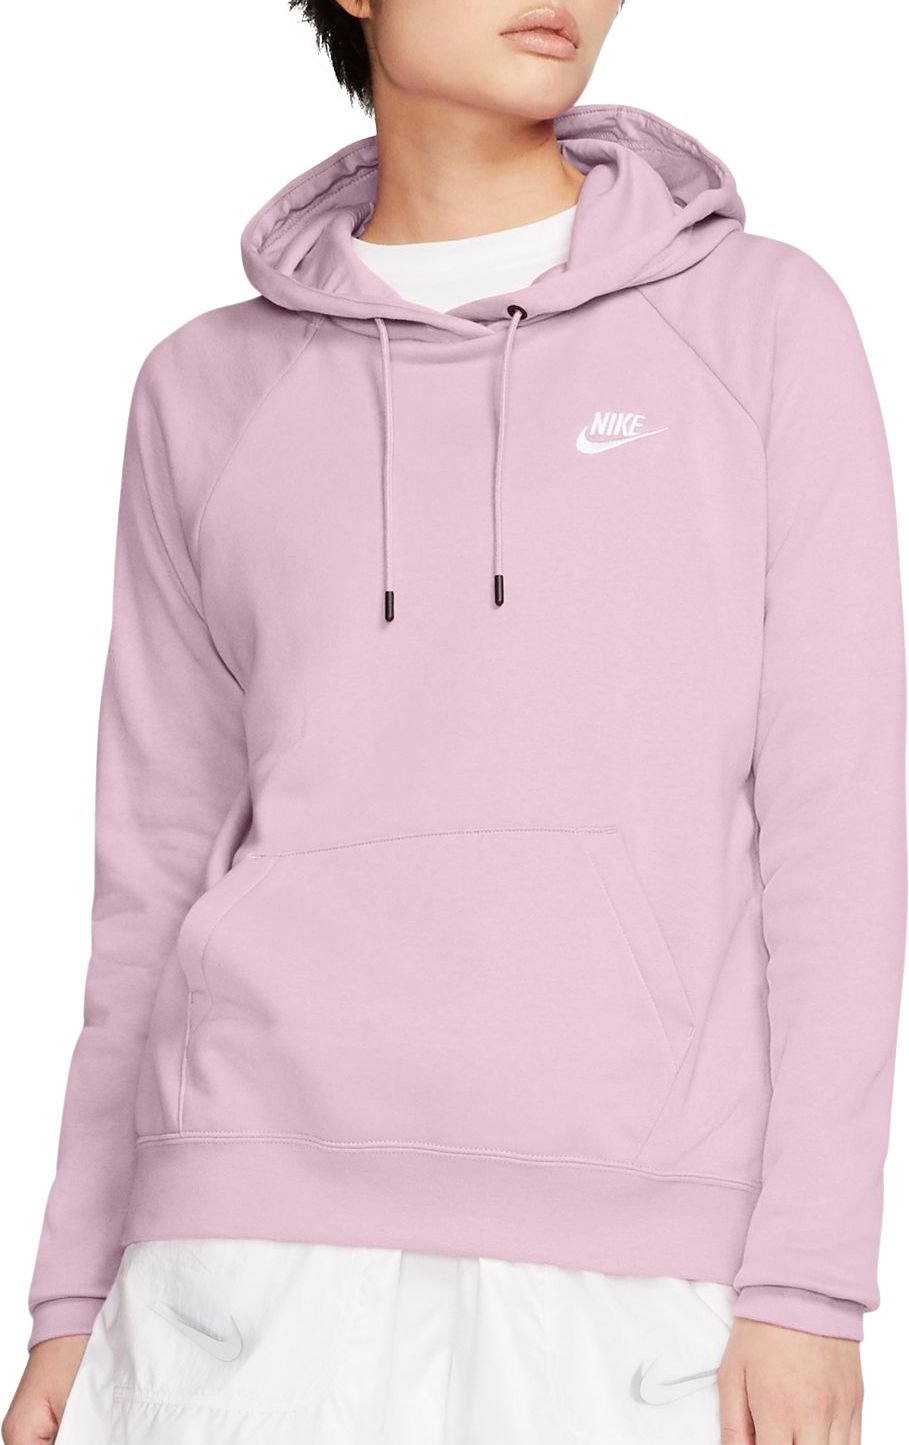 women's nike hoodie pink